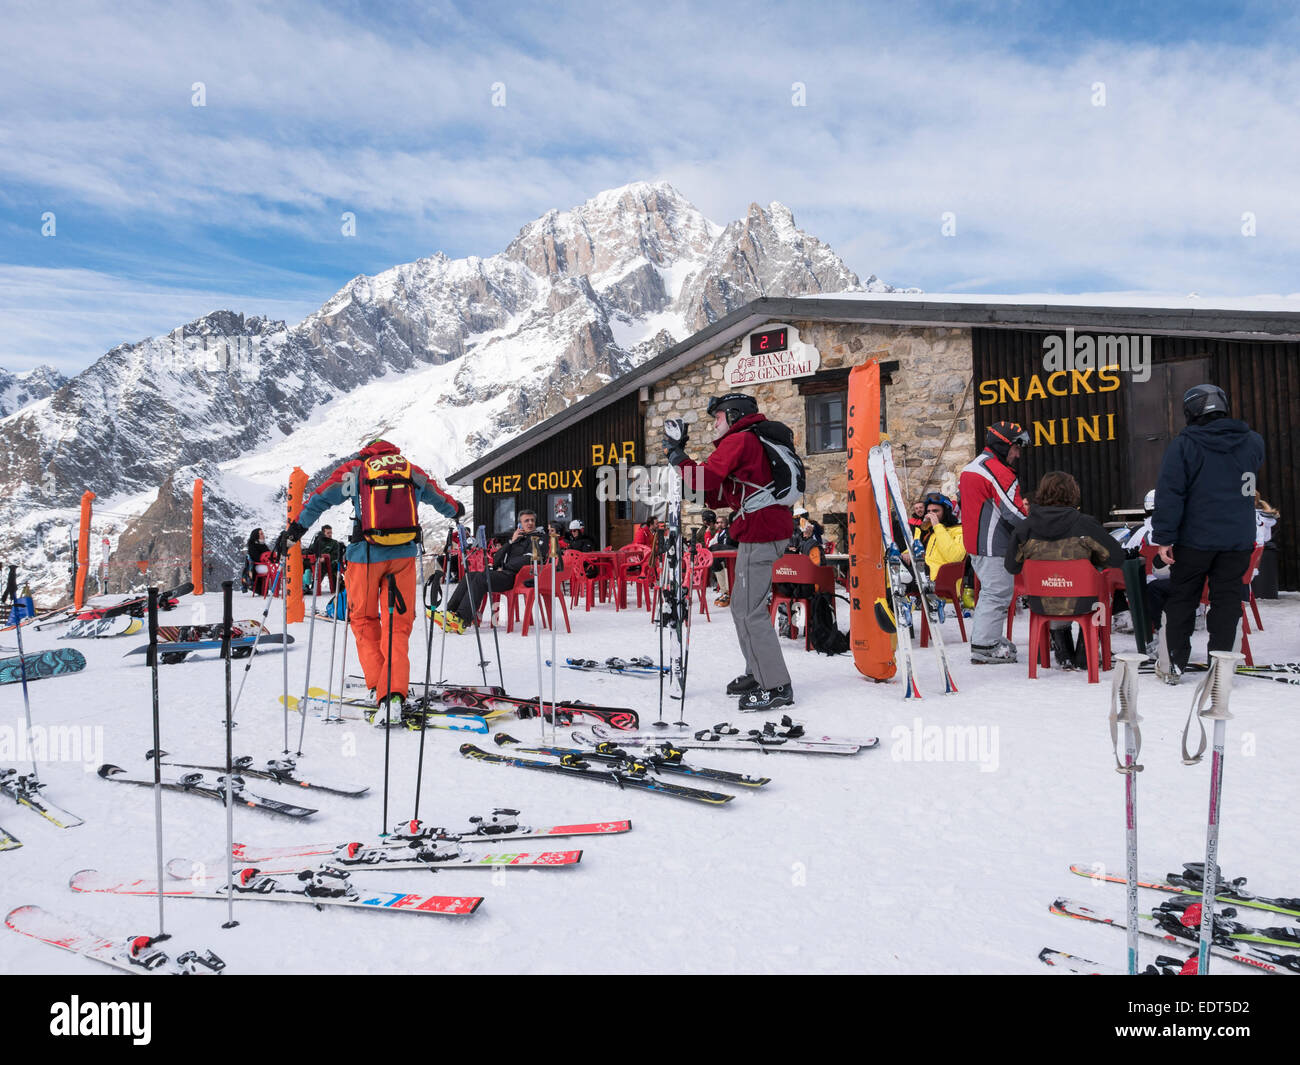 Les skis et les skieurs à l'extérieur de chez Croux ski bar cafe restaurant à Graian Alps avec snow Courmayeur, vallée d'aoste, Italie, Europe Banque D'Images